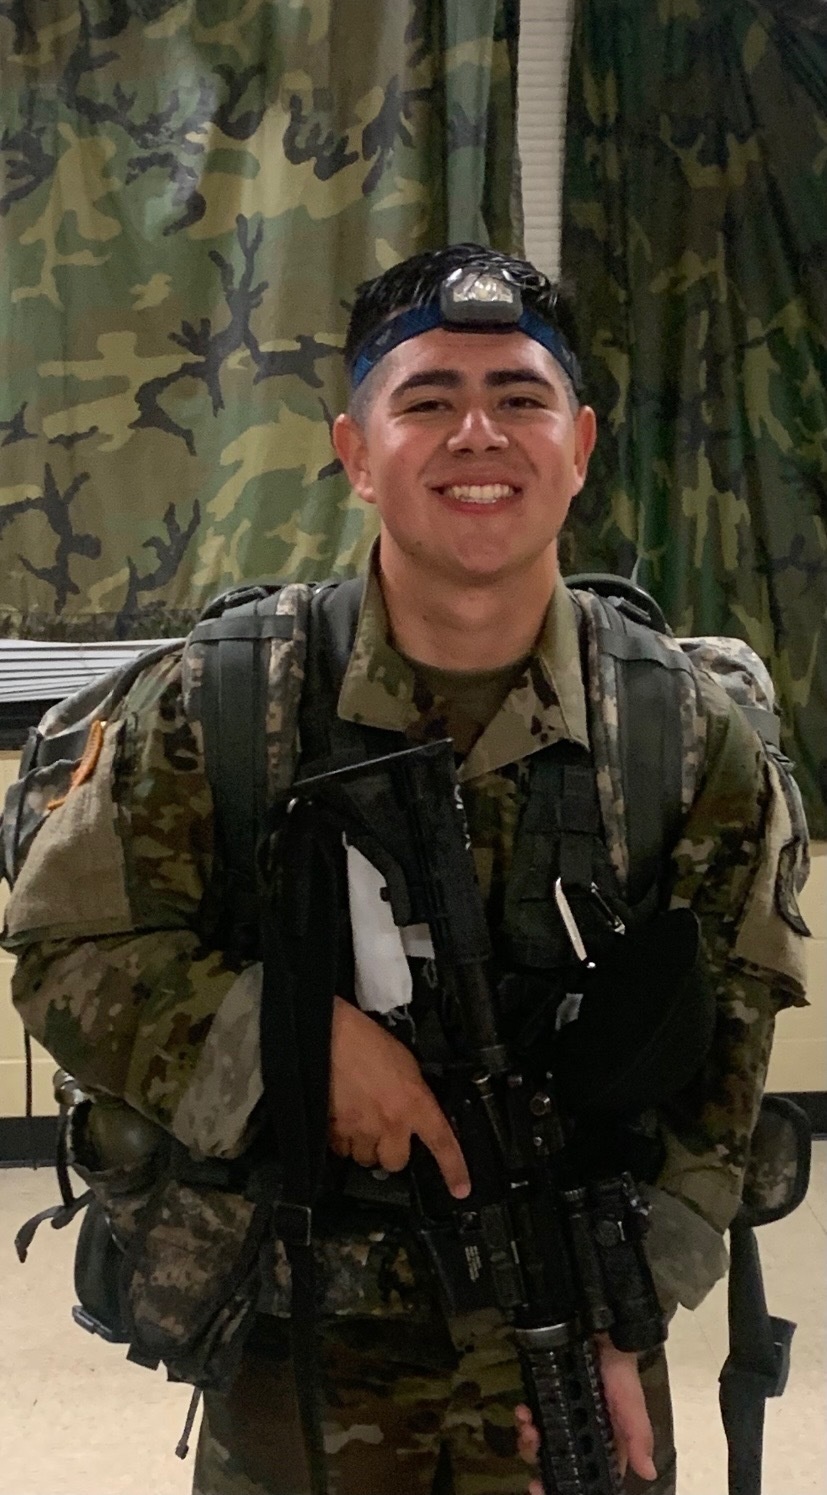 Cadet Ricardo Correa from Arizona State University